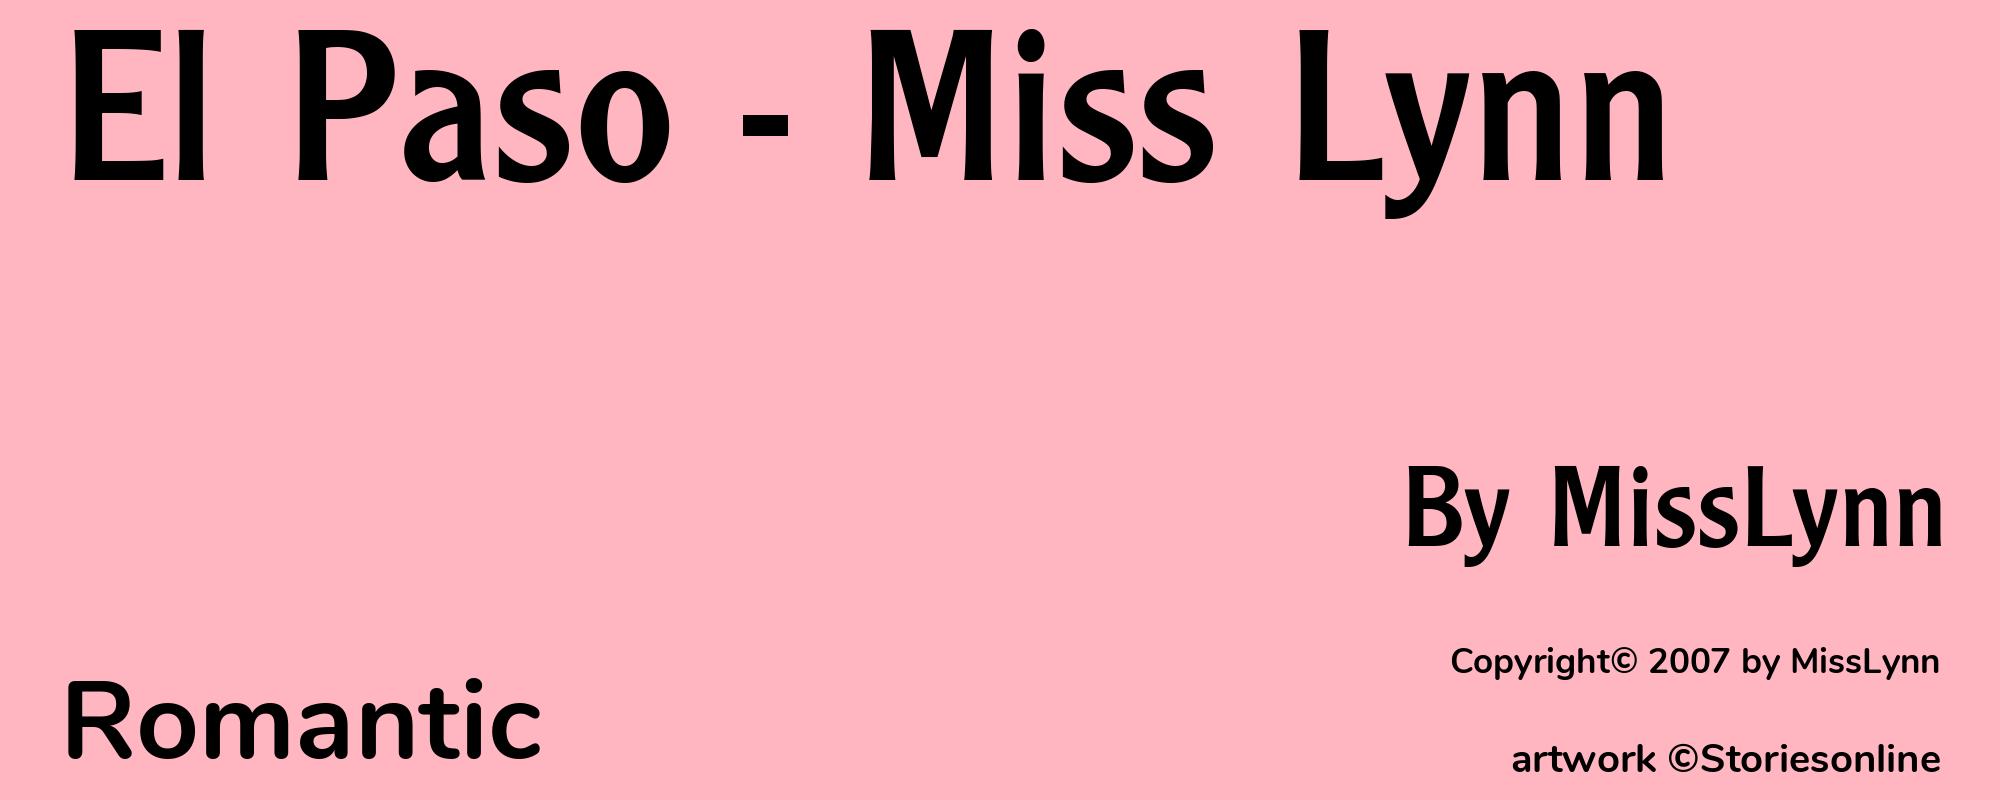 El Paso - Miss Lynn - Cover